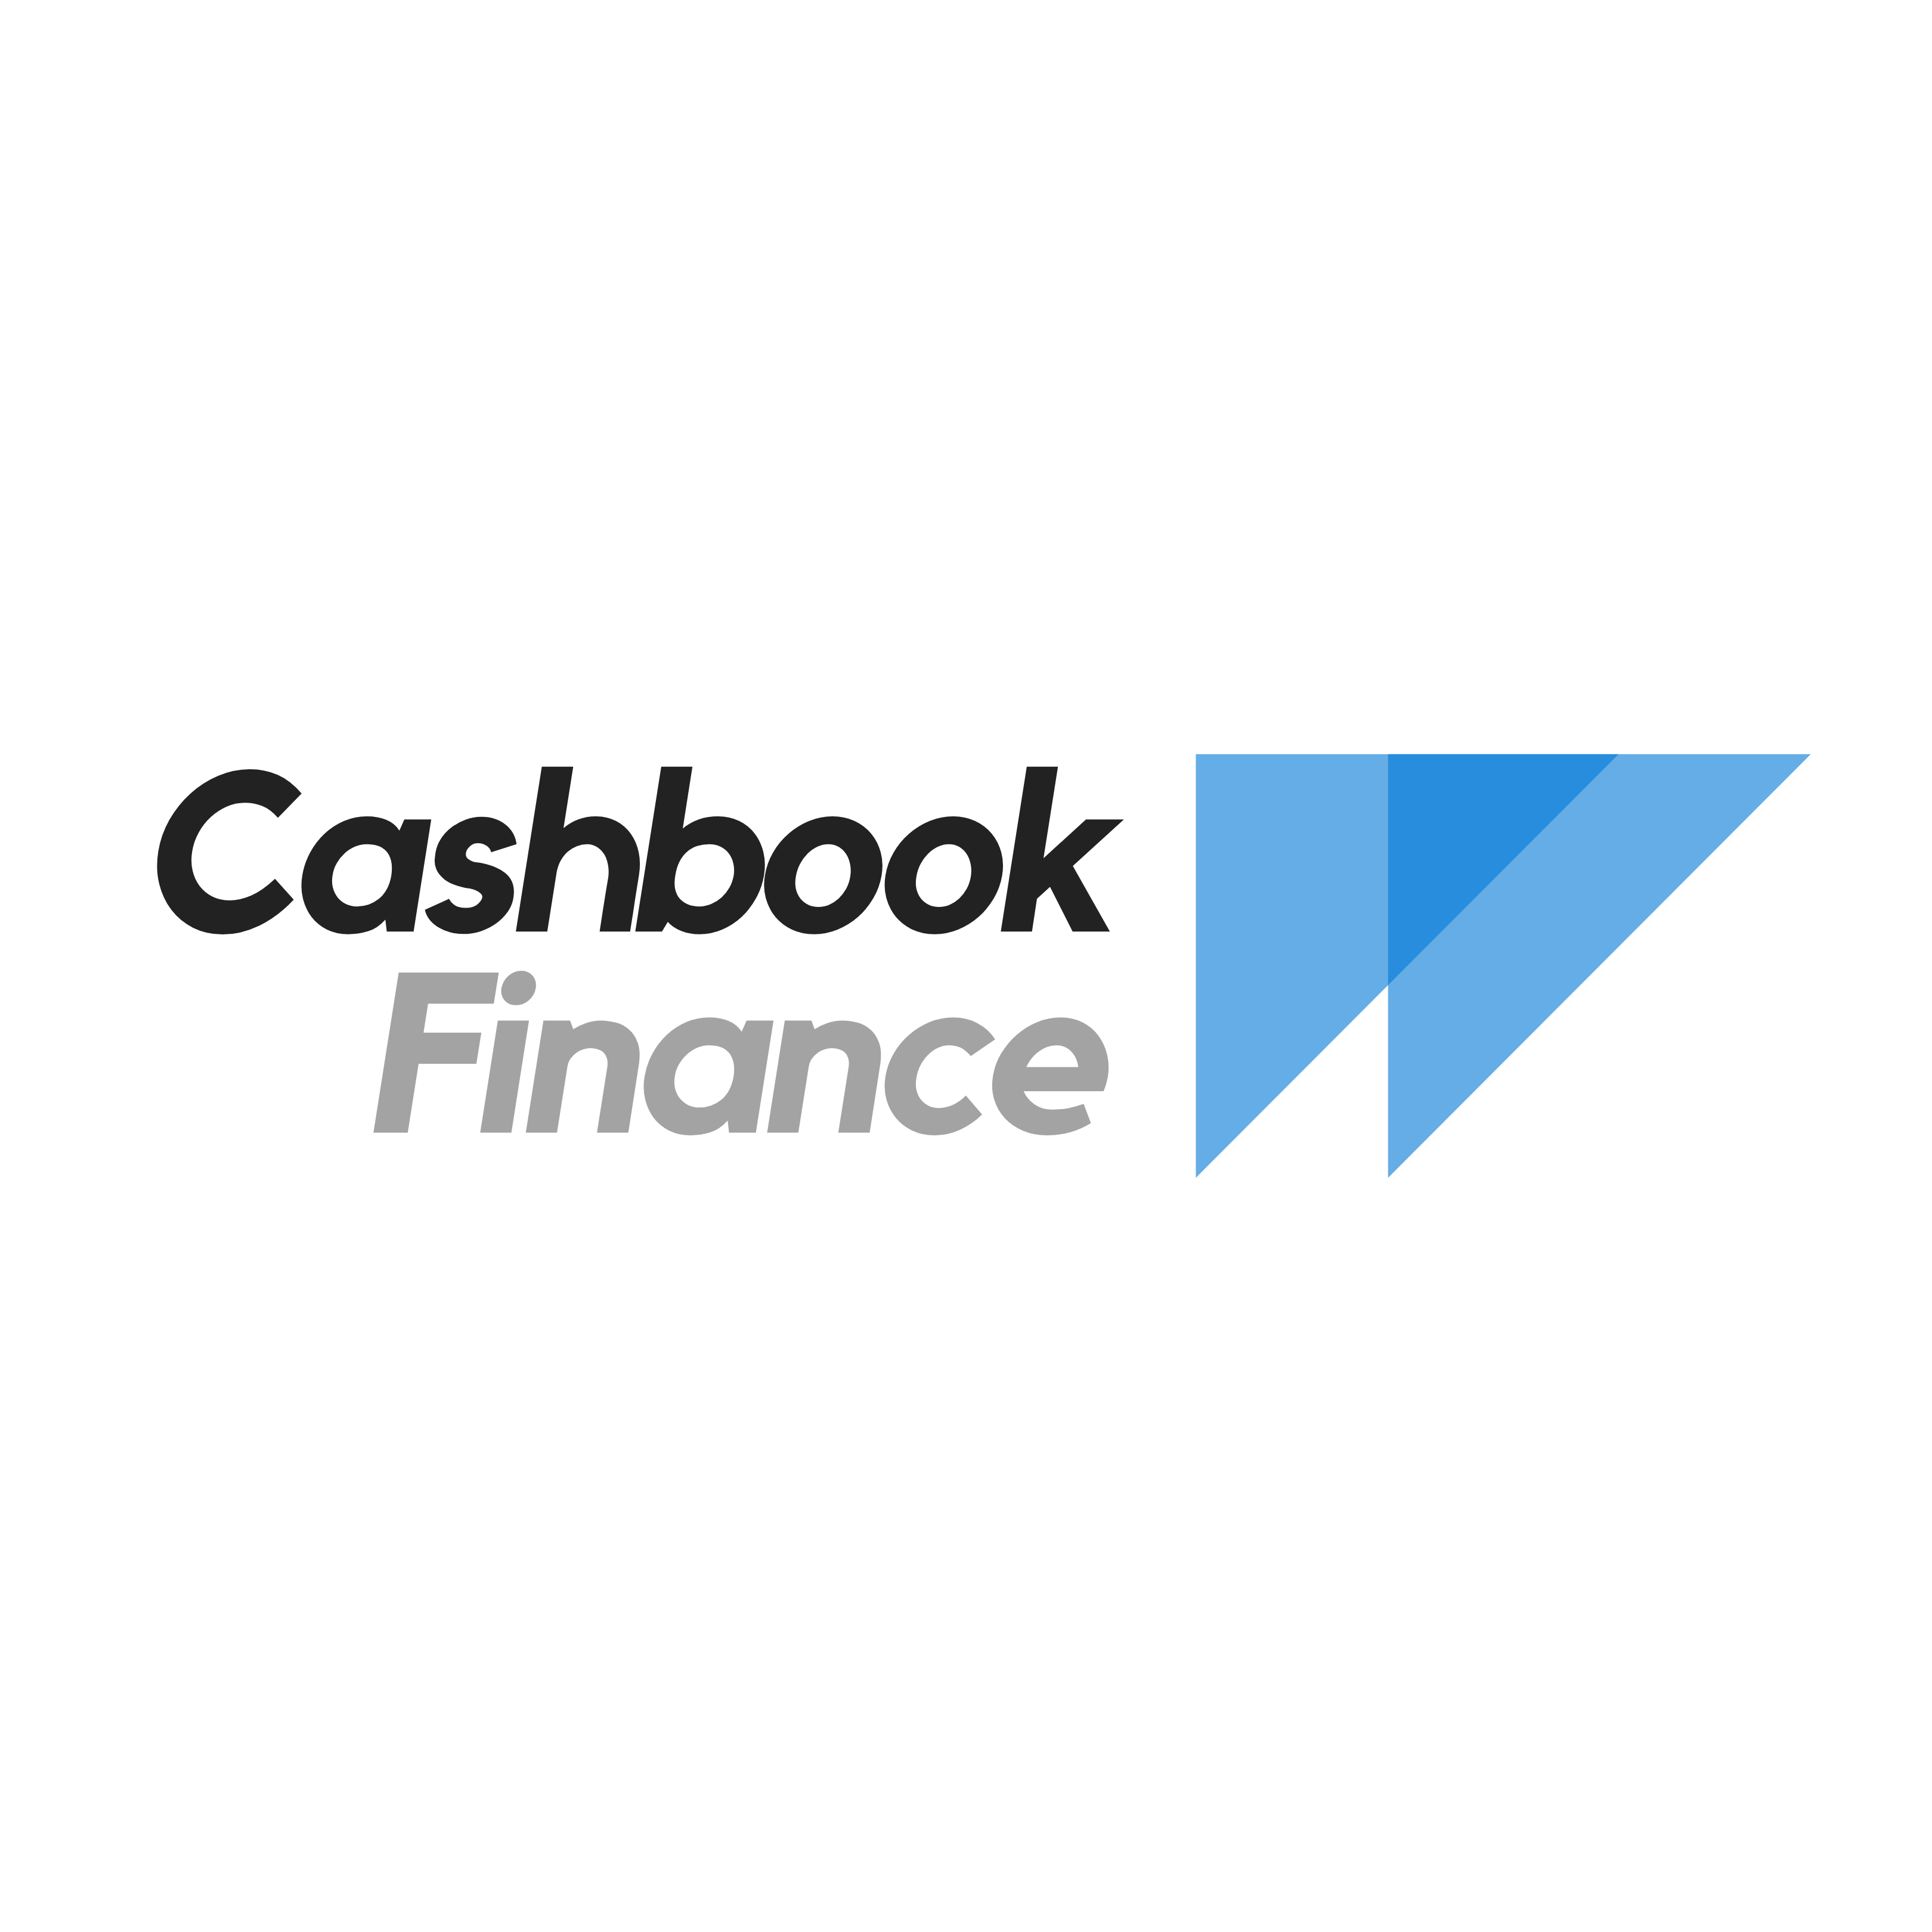 Cashbook Finance